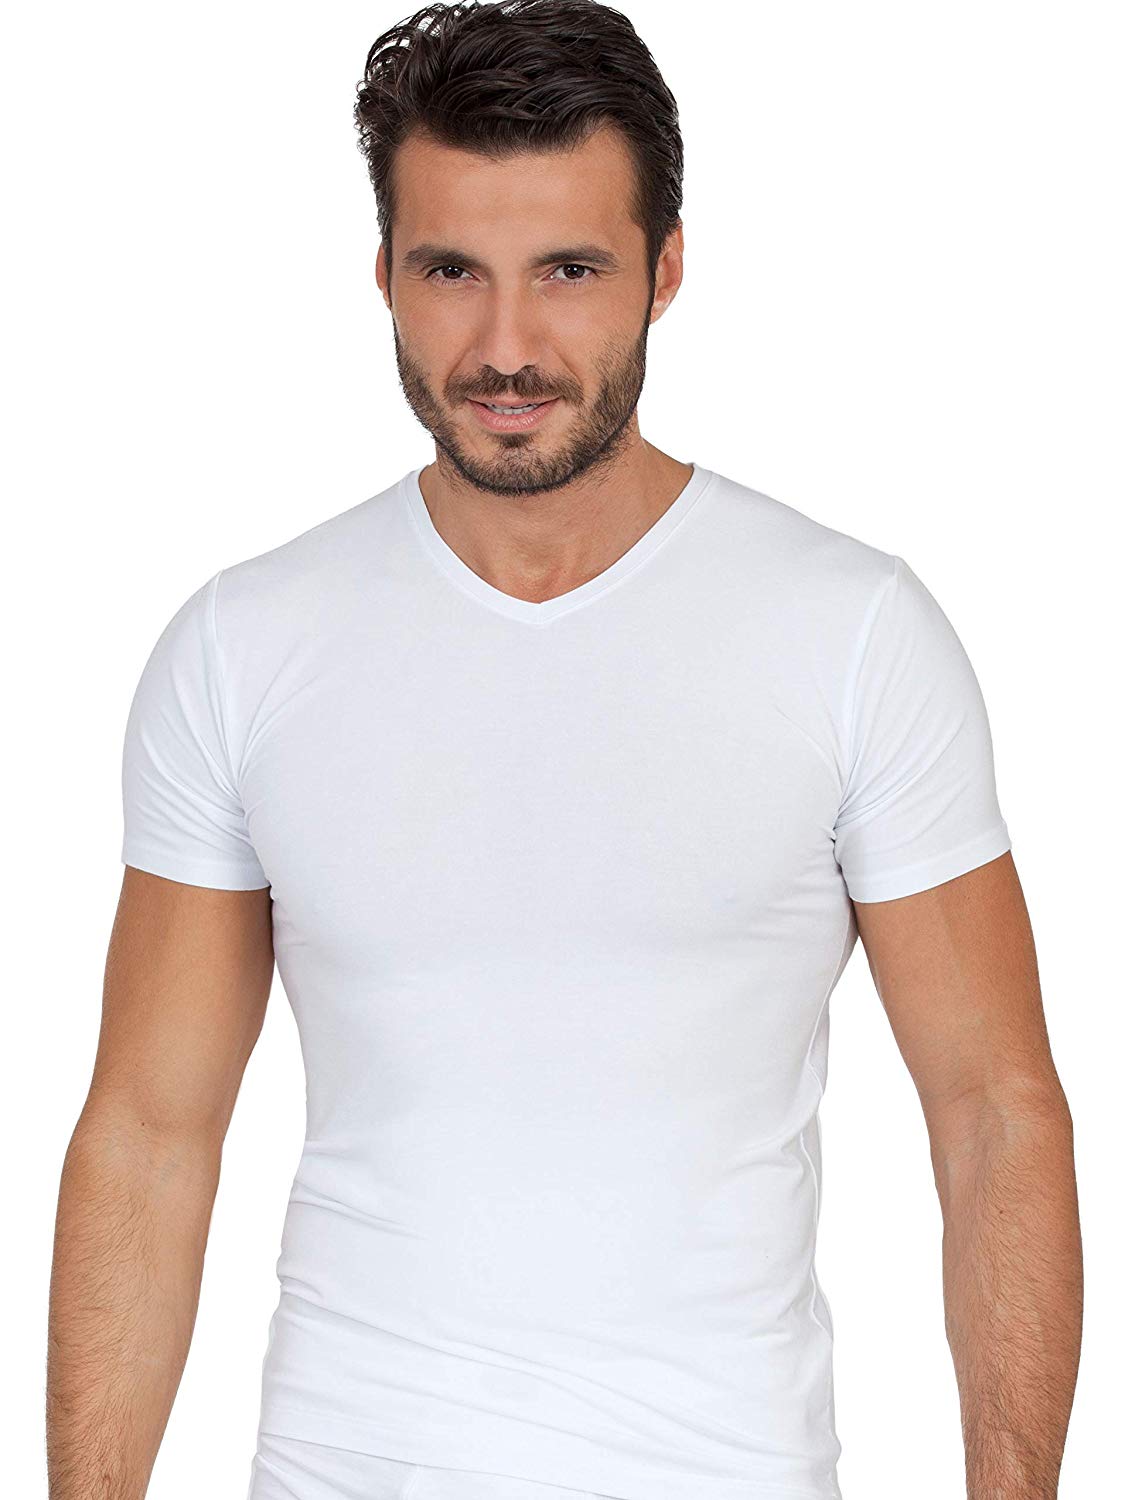 EGI Luxury Modal Men's V-Neck T-Shirt. Proudly Made in Italy. | eBay